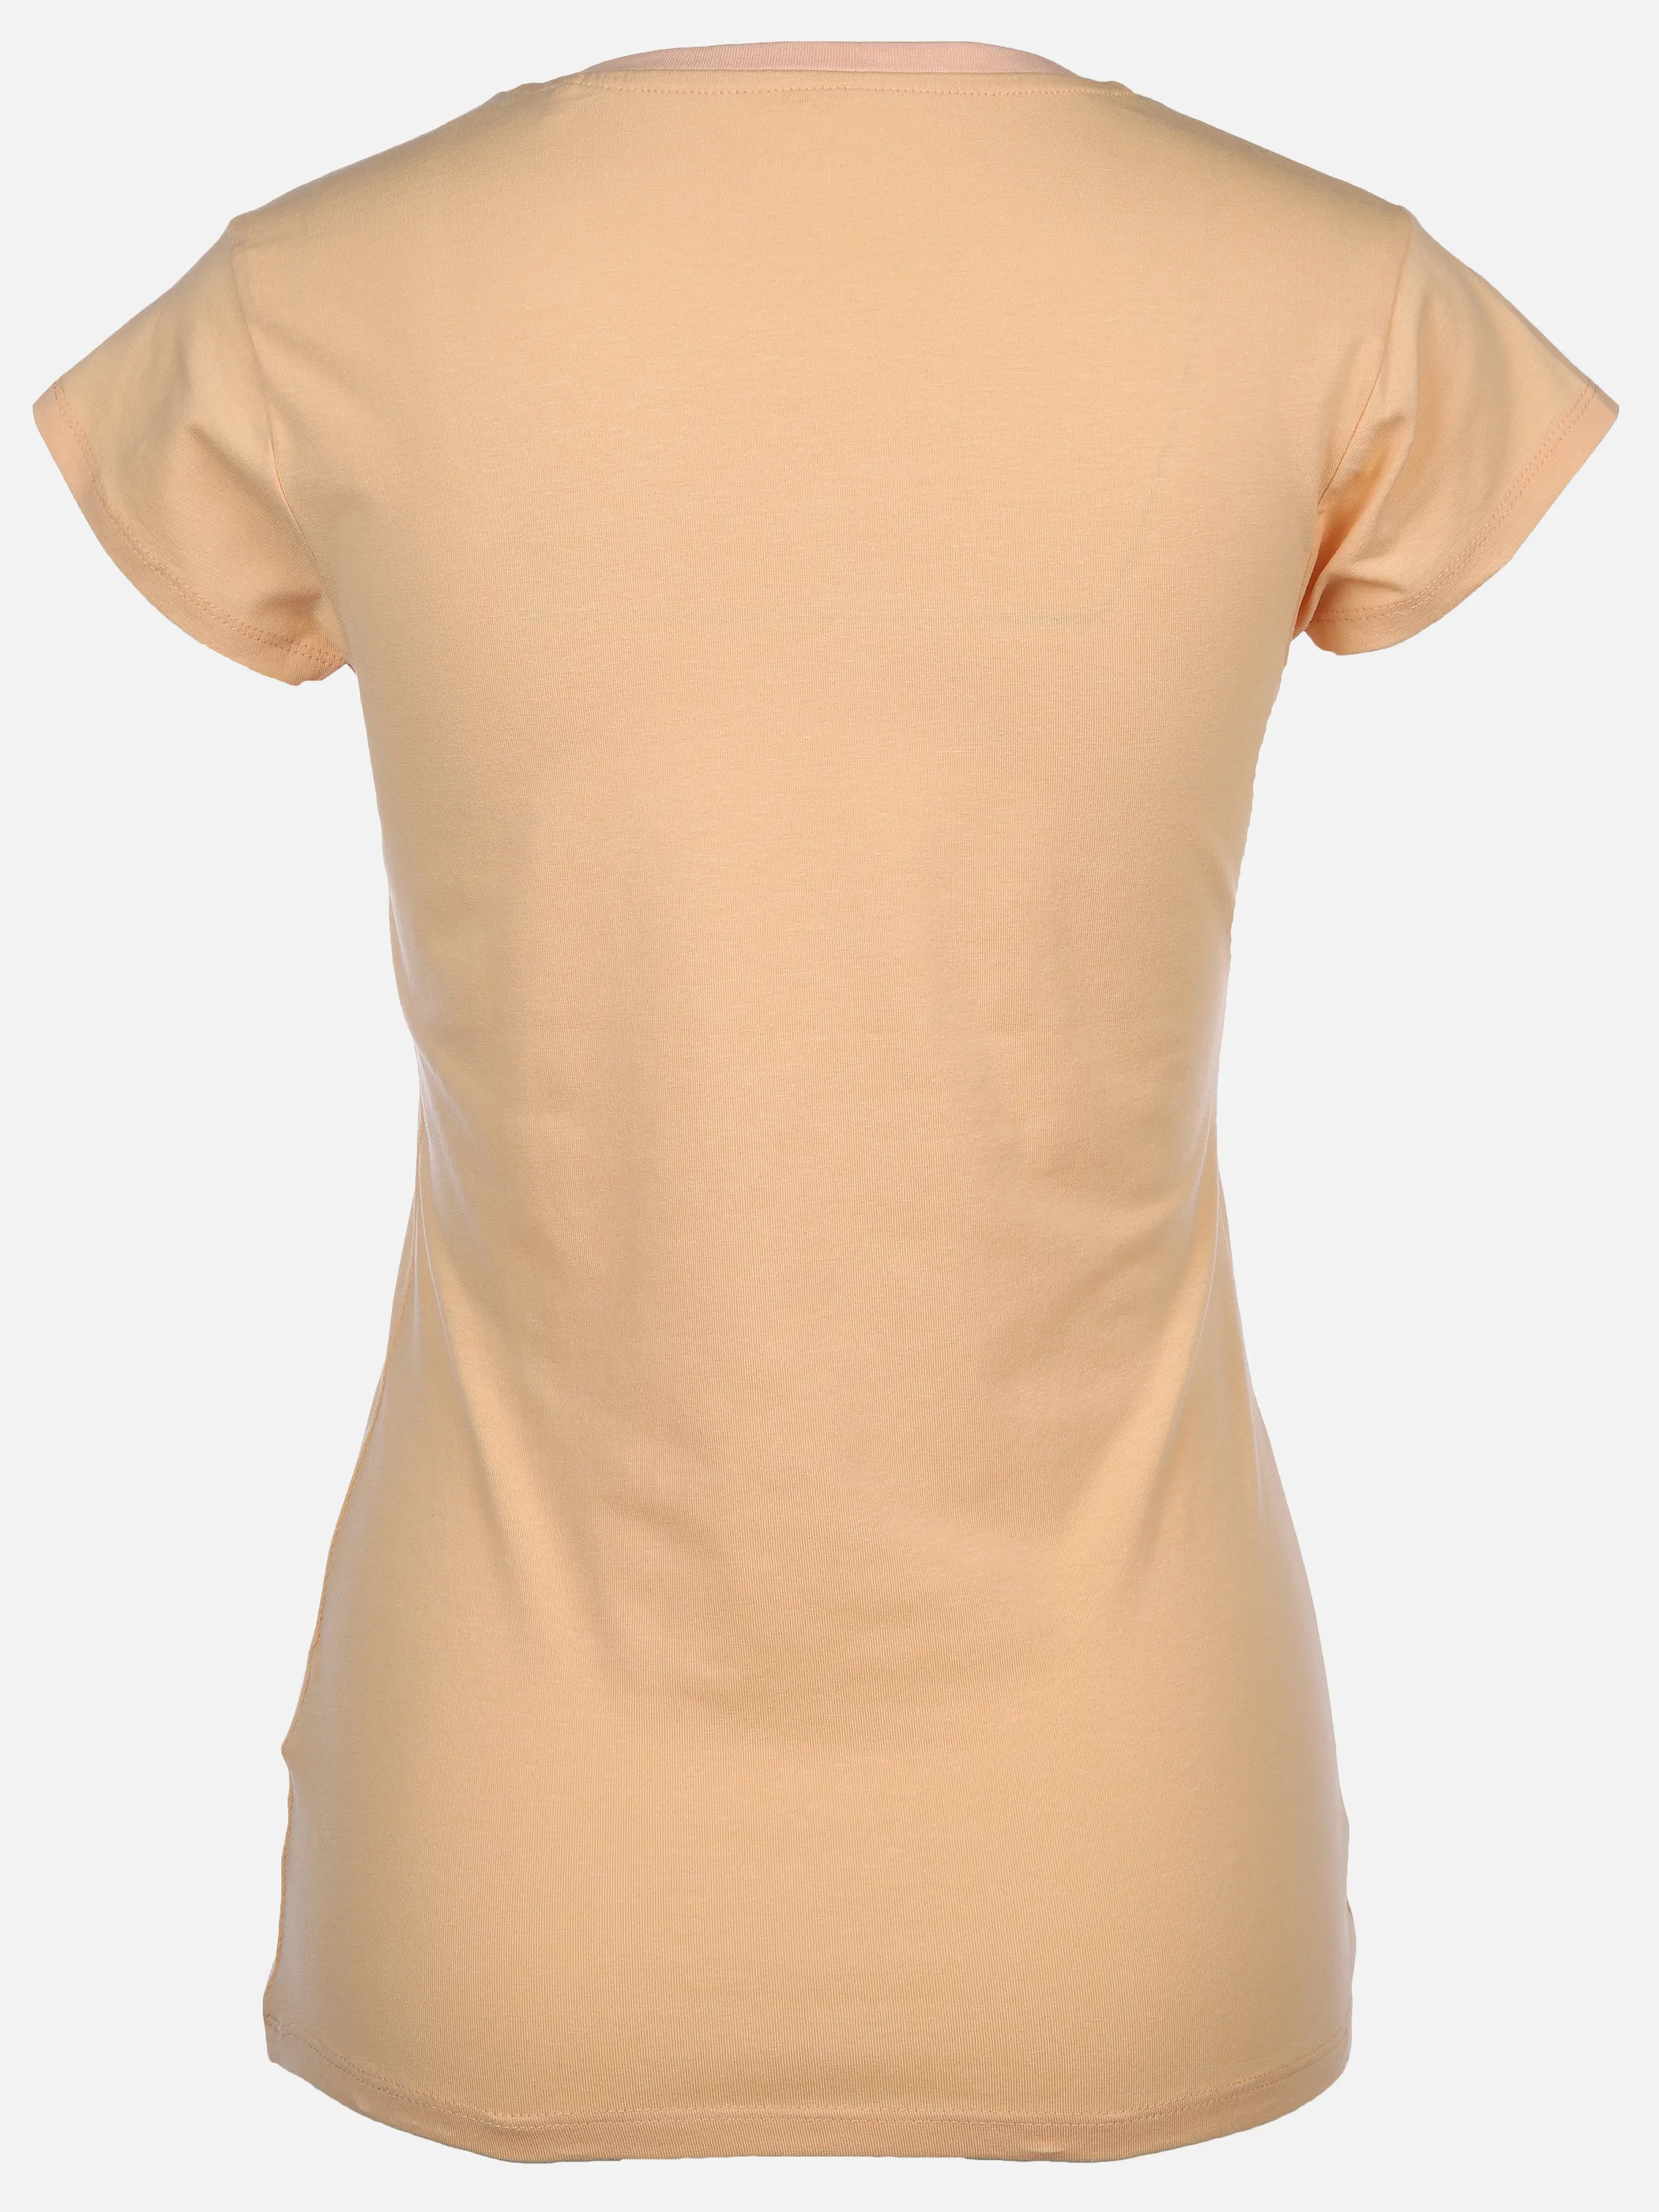 IX-O YF-Da T-Shirt Basic Orange 890072 13-1020TCX 2